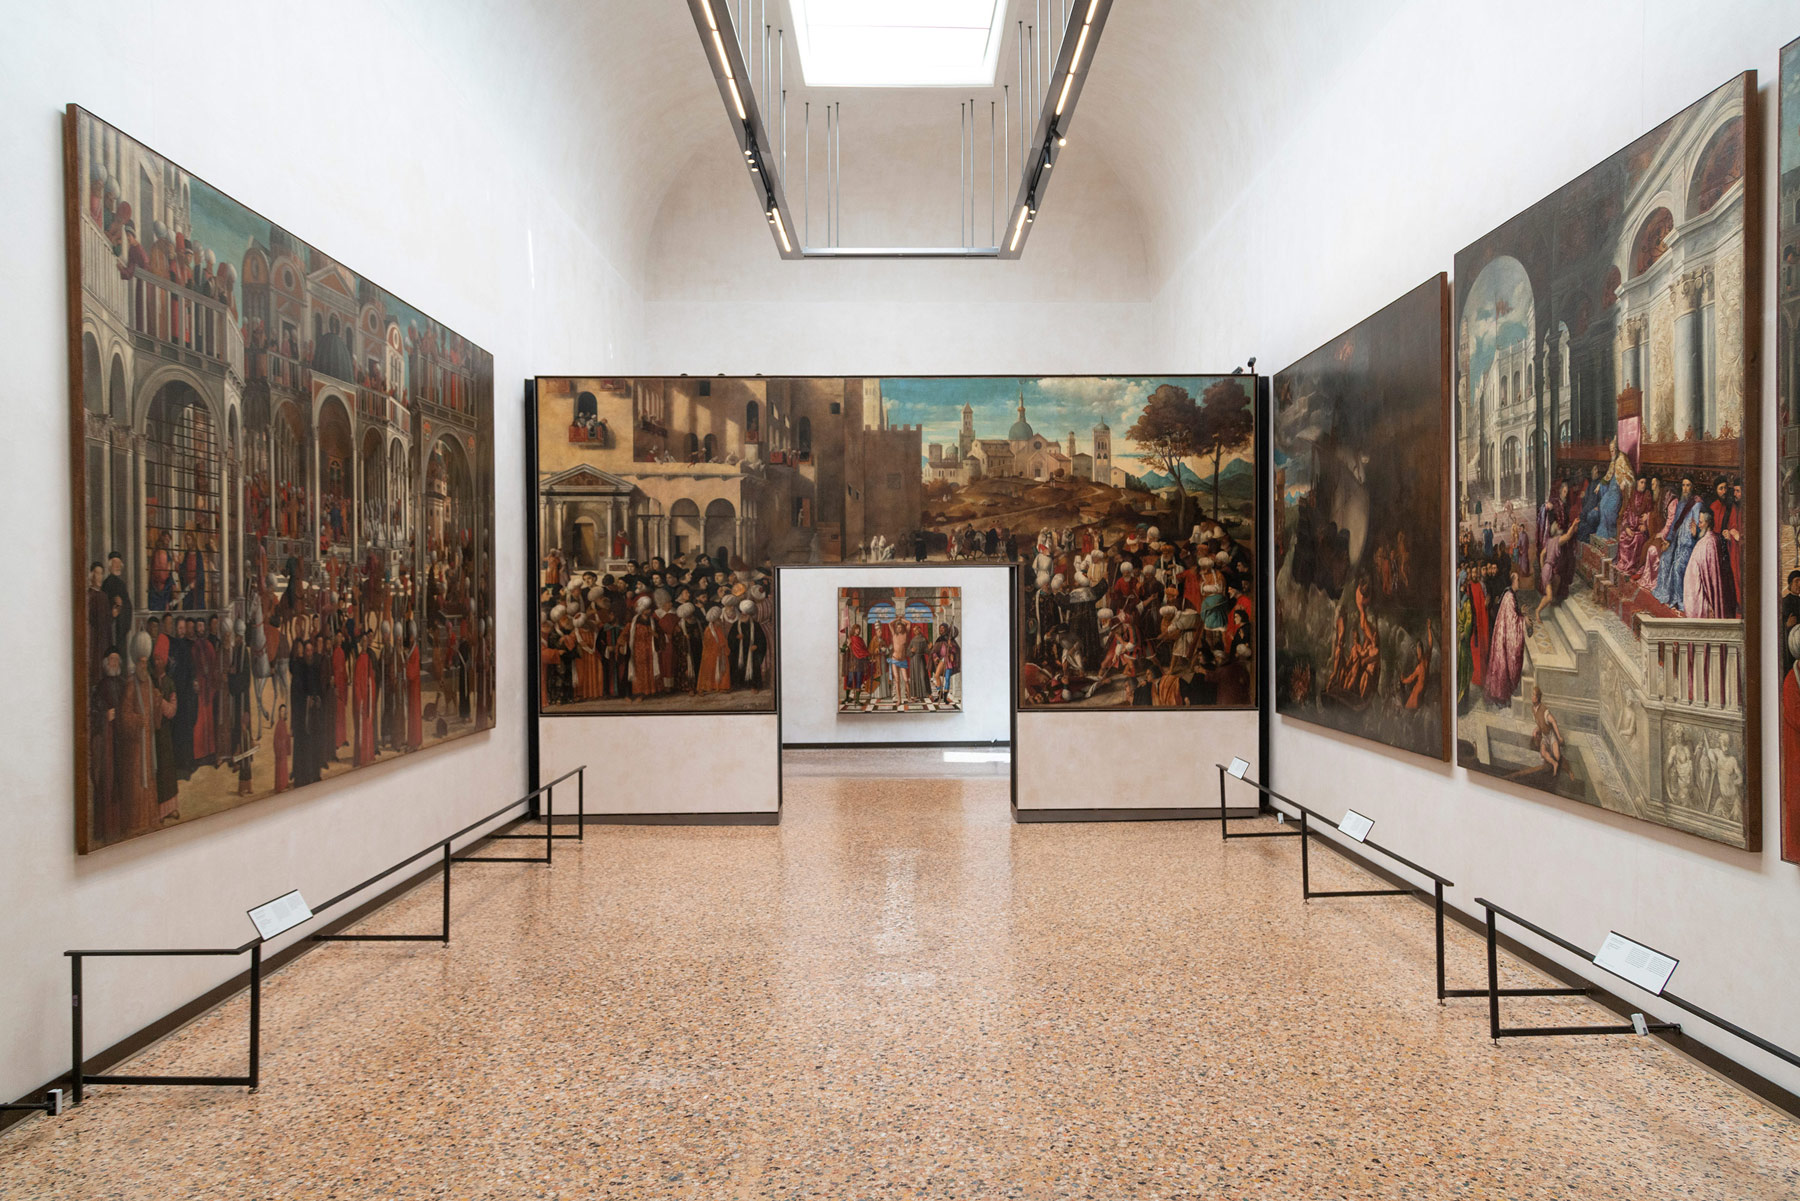 галерея академии в венеции